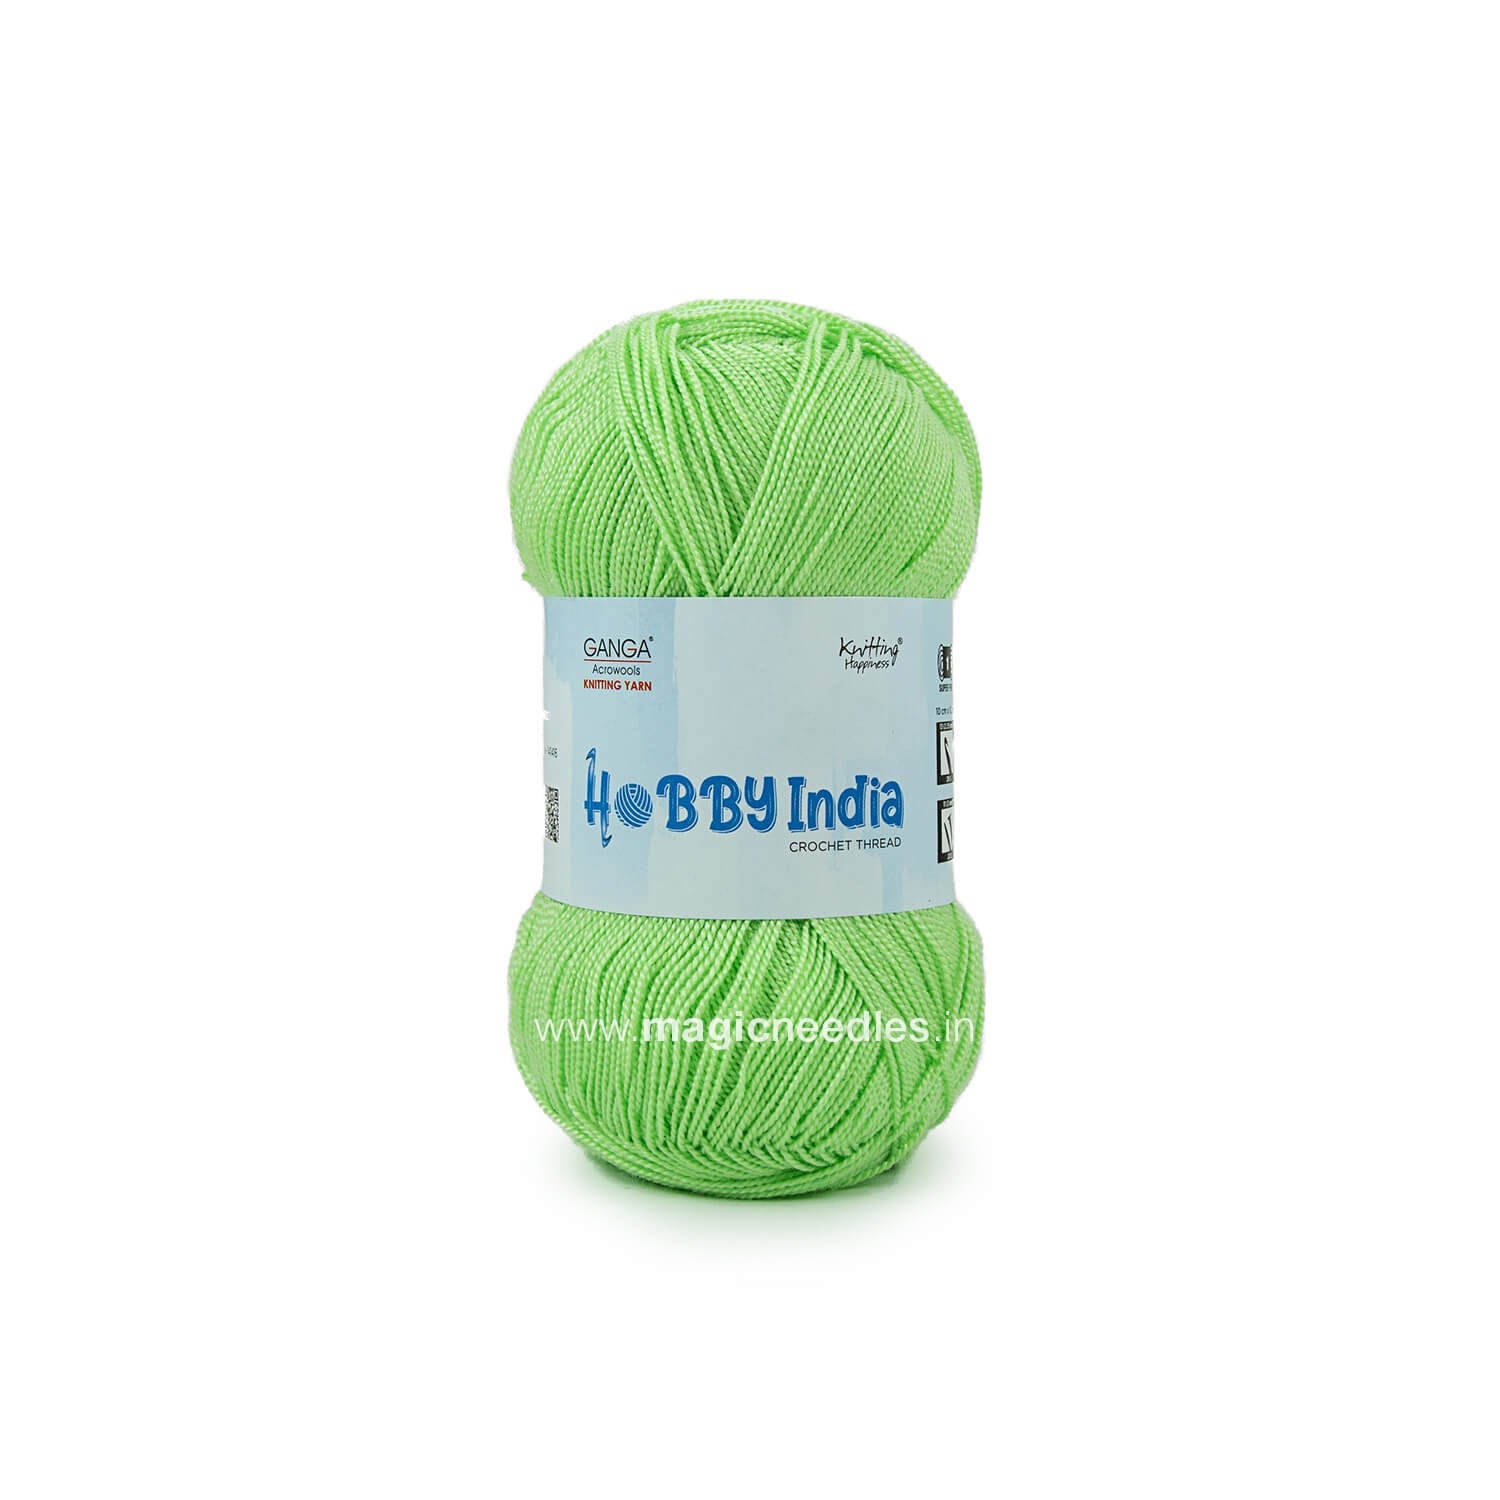 Ganga Hobby India Crochet Thread - Green CUD65